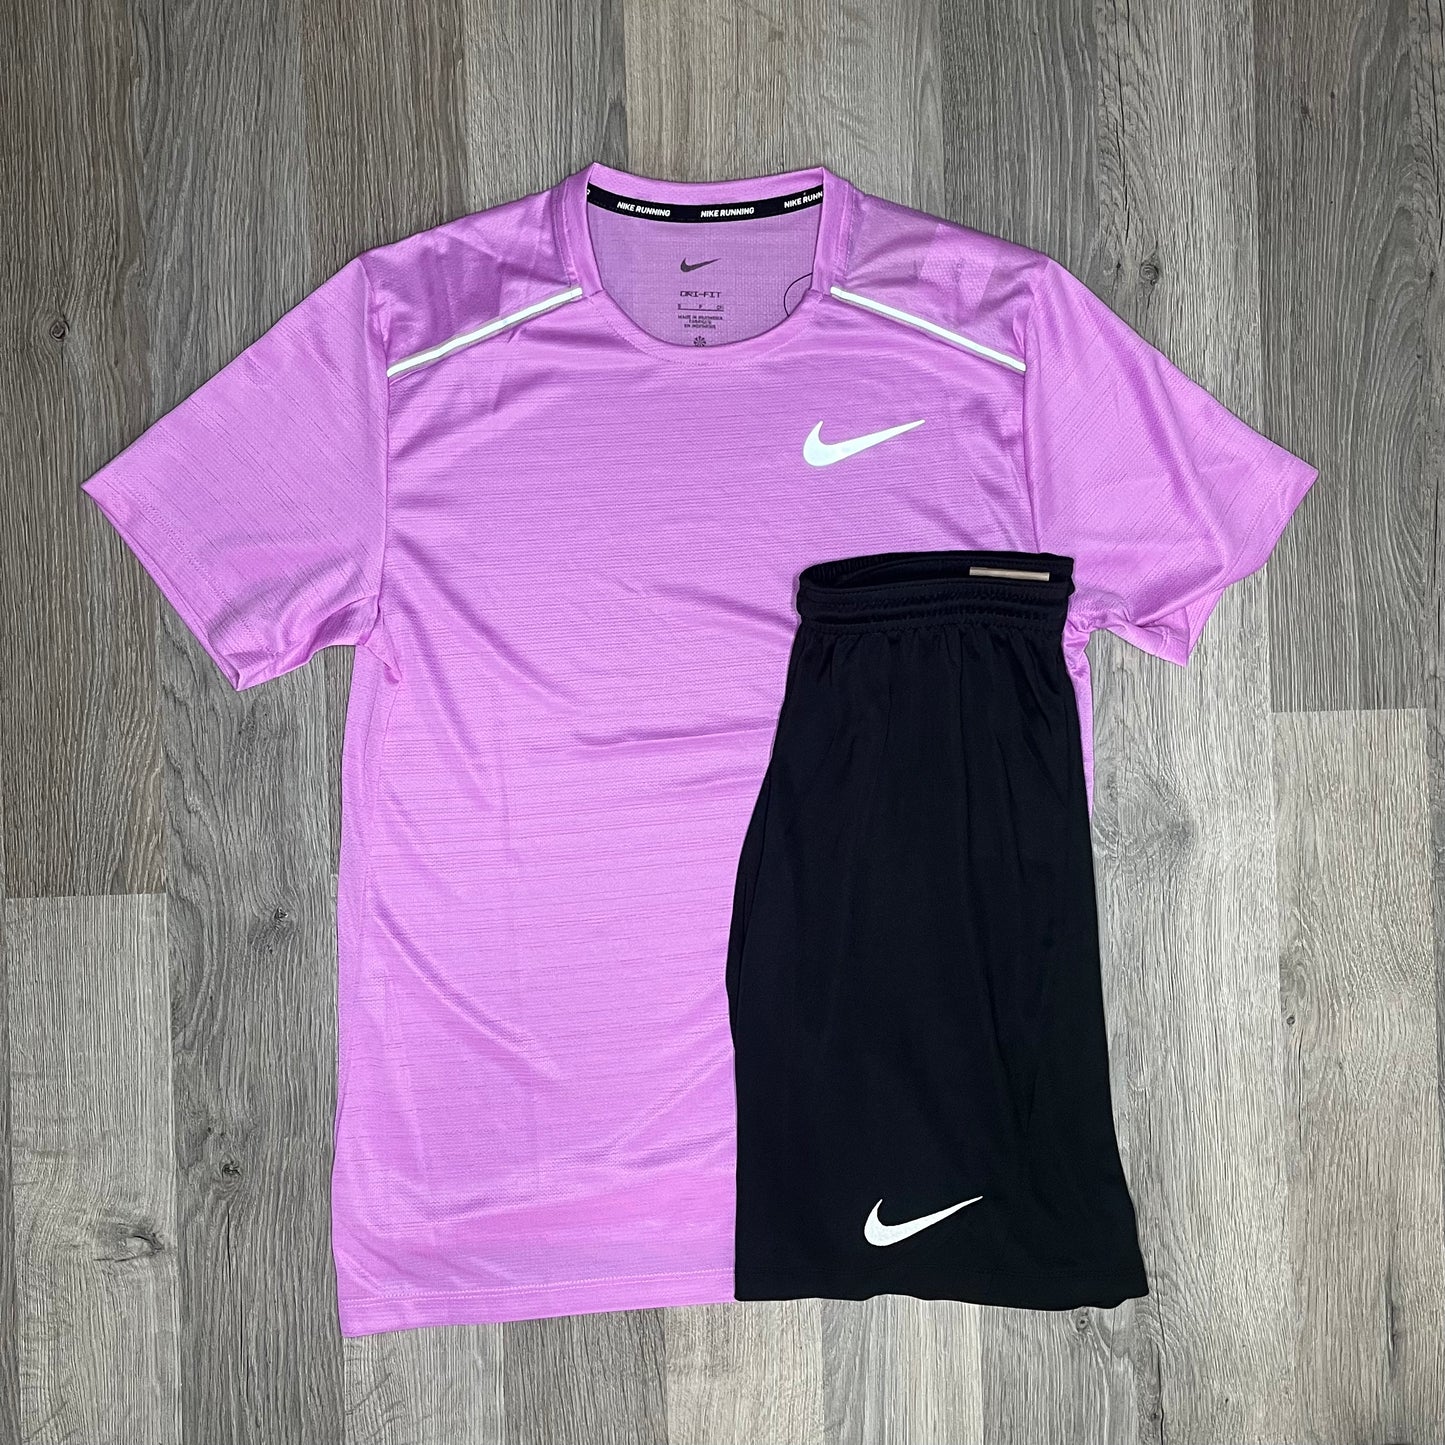 Nike Miler / Dri Fit Set - Tee / Shorts - Rush Fuchsia / Black